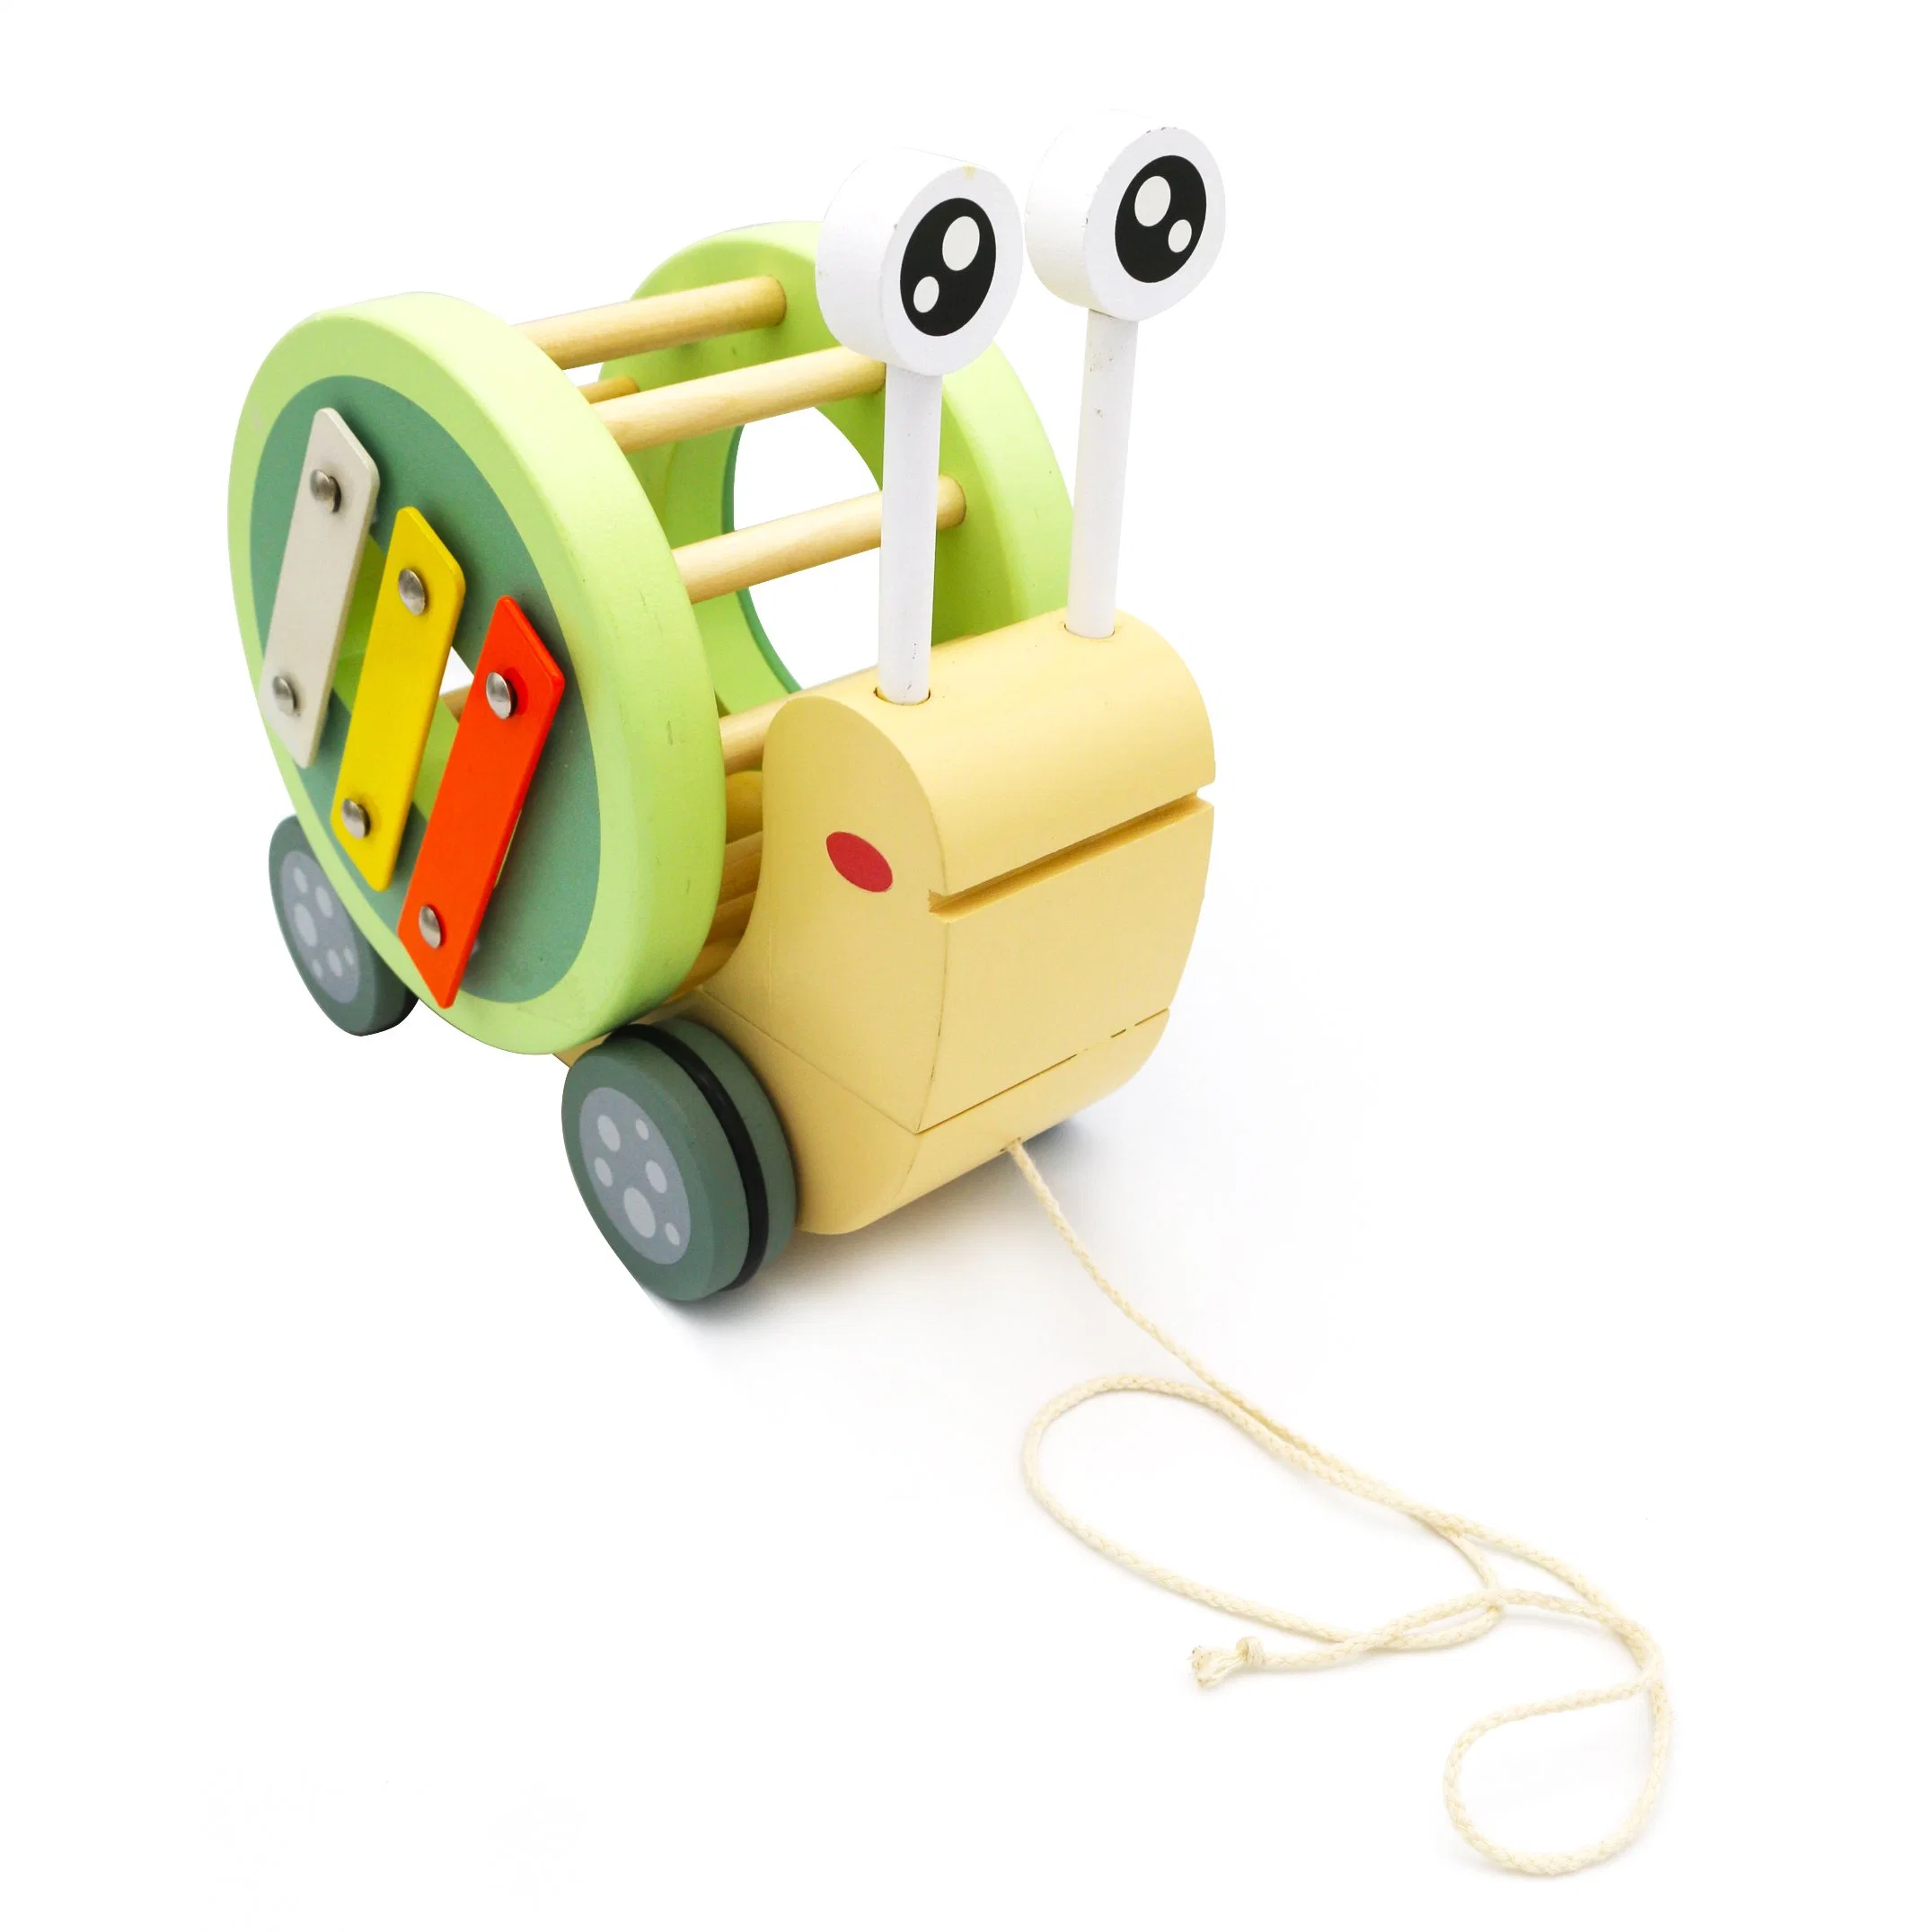 Hölzerne Pädagogische Baby-Spielwaren Hersteller Lieferant Ganzverkauf Hölzerne Ziehen Entlang Schnecke Spielzeug für Kinder und Babys